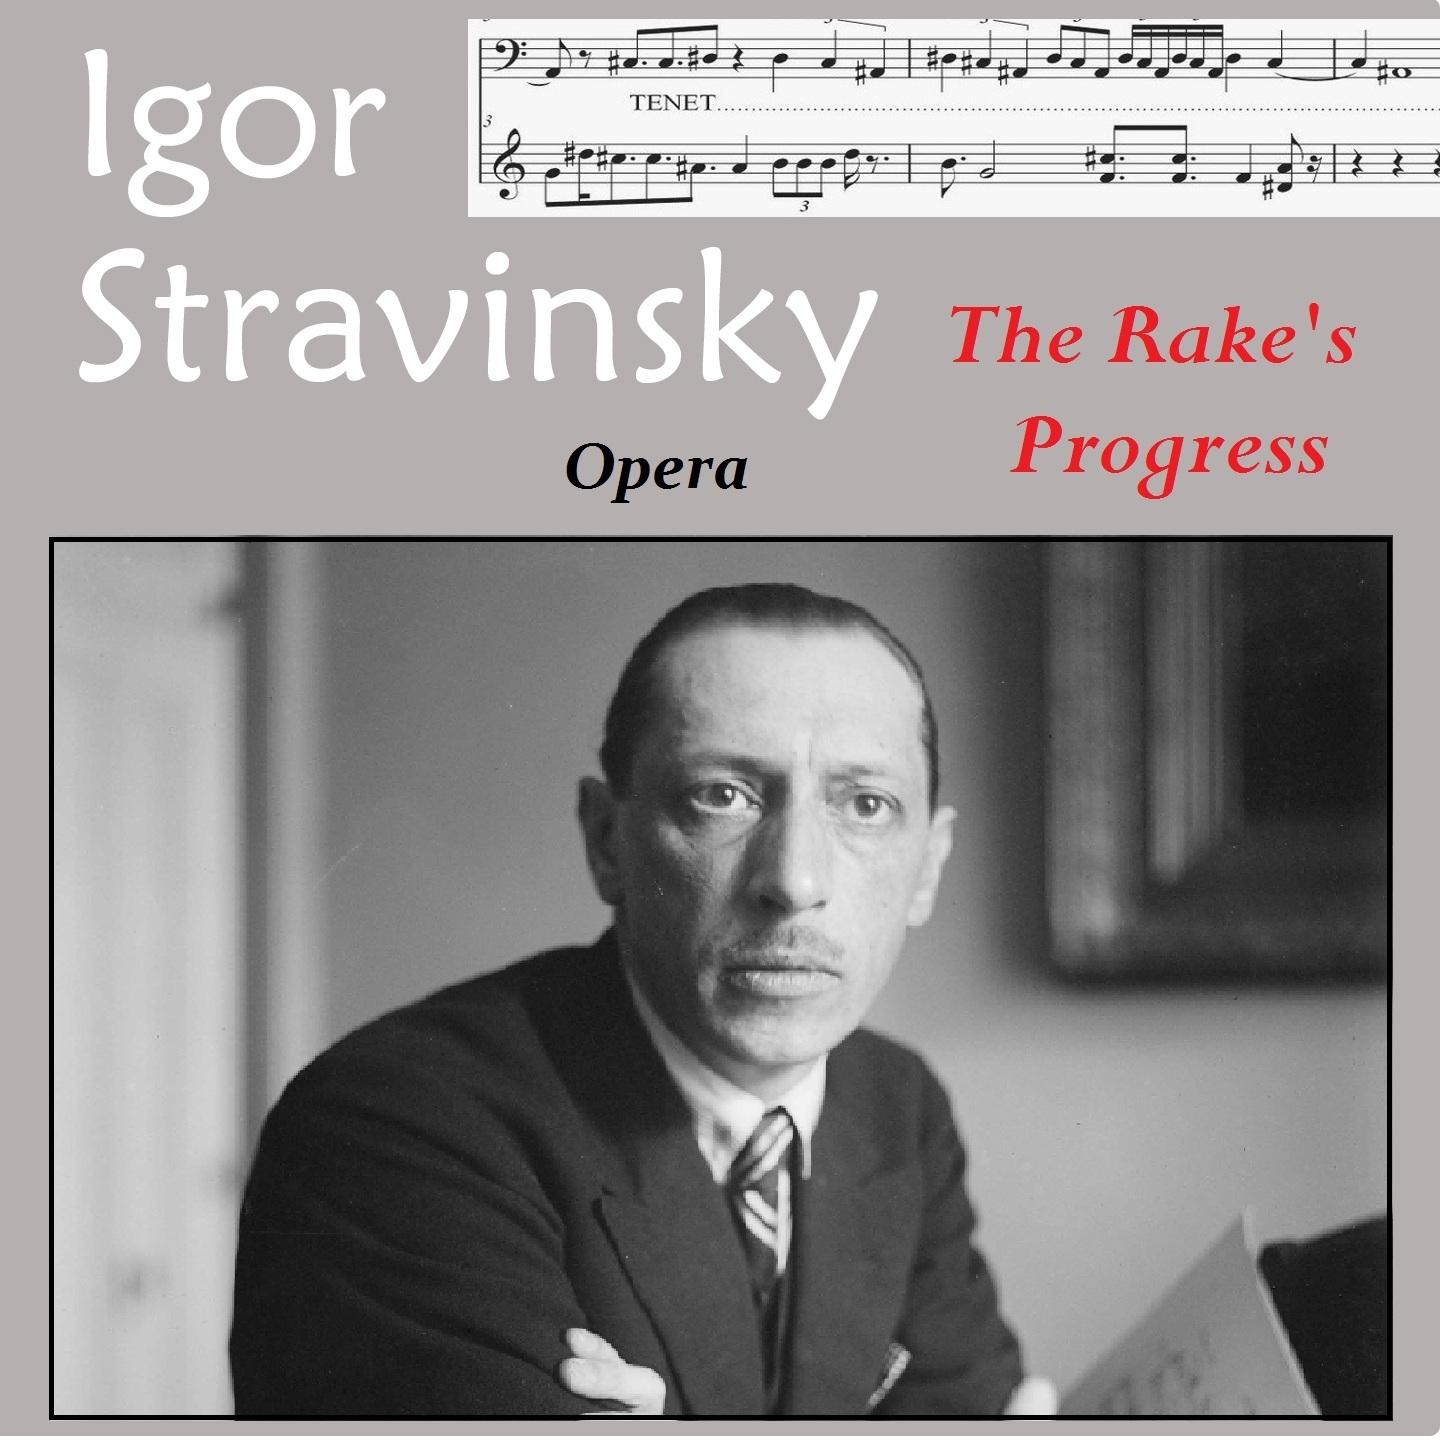 Orchestra del Teatro alla Scala di Milano - The Rake's Progress, Act I, Scene 1: 